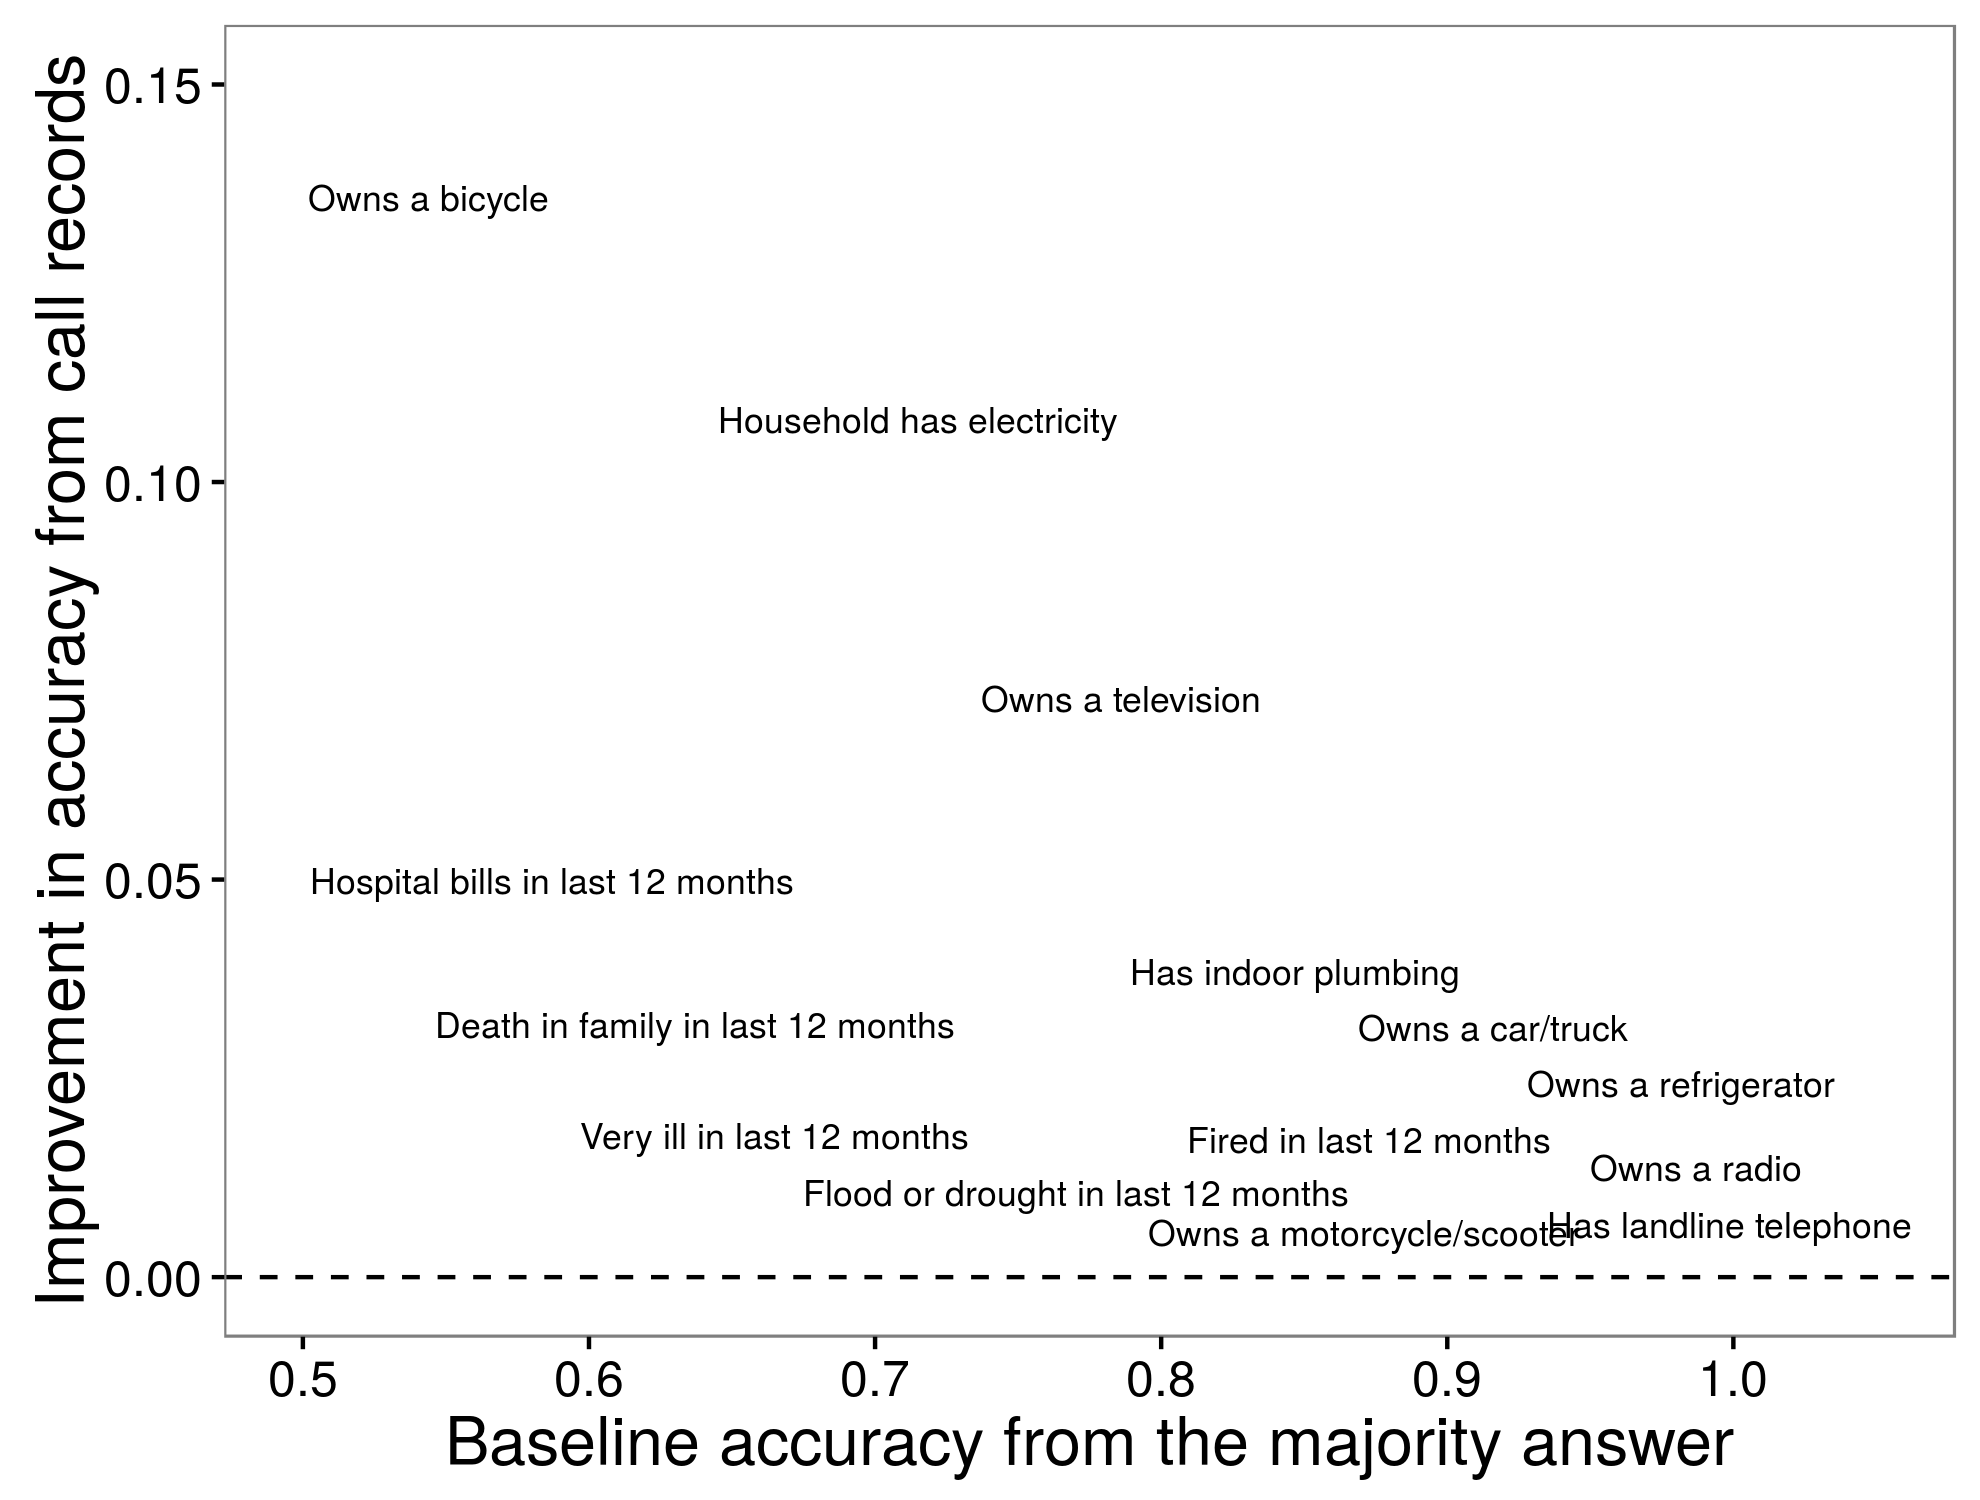 Рисунок 3.15: Сравнение точности прогноза для статистической модели, подготовленной с помощью записей вызовов, к простому прогнозу базовой линии. Очки слегка дрожат, чтобы избежать совпадений. Адаптировано из Blumenstock (2014), таблица 2.